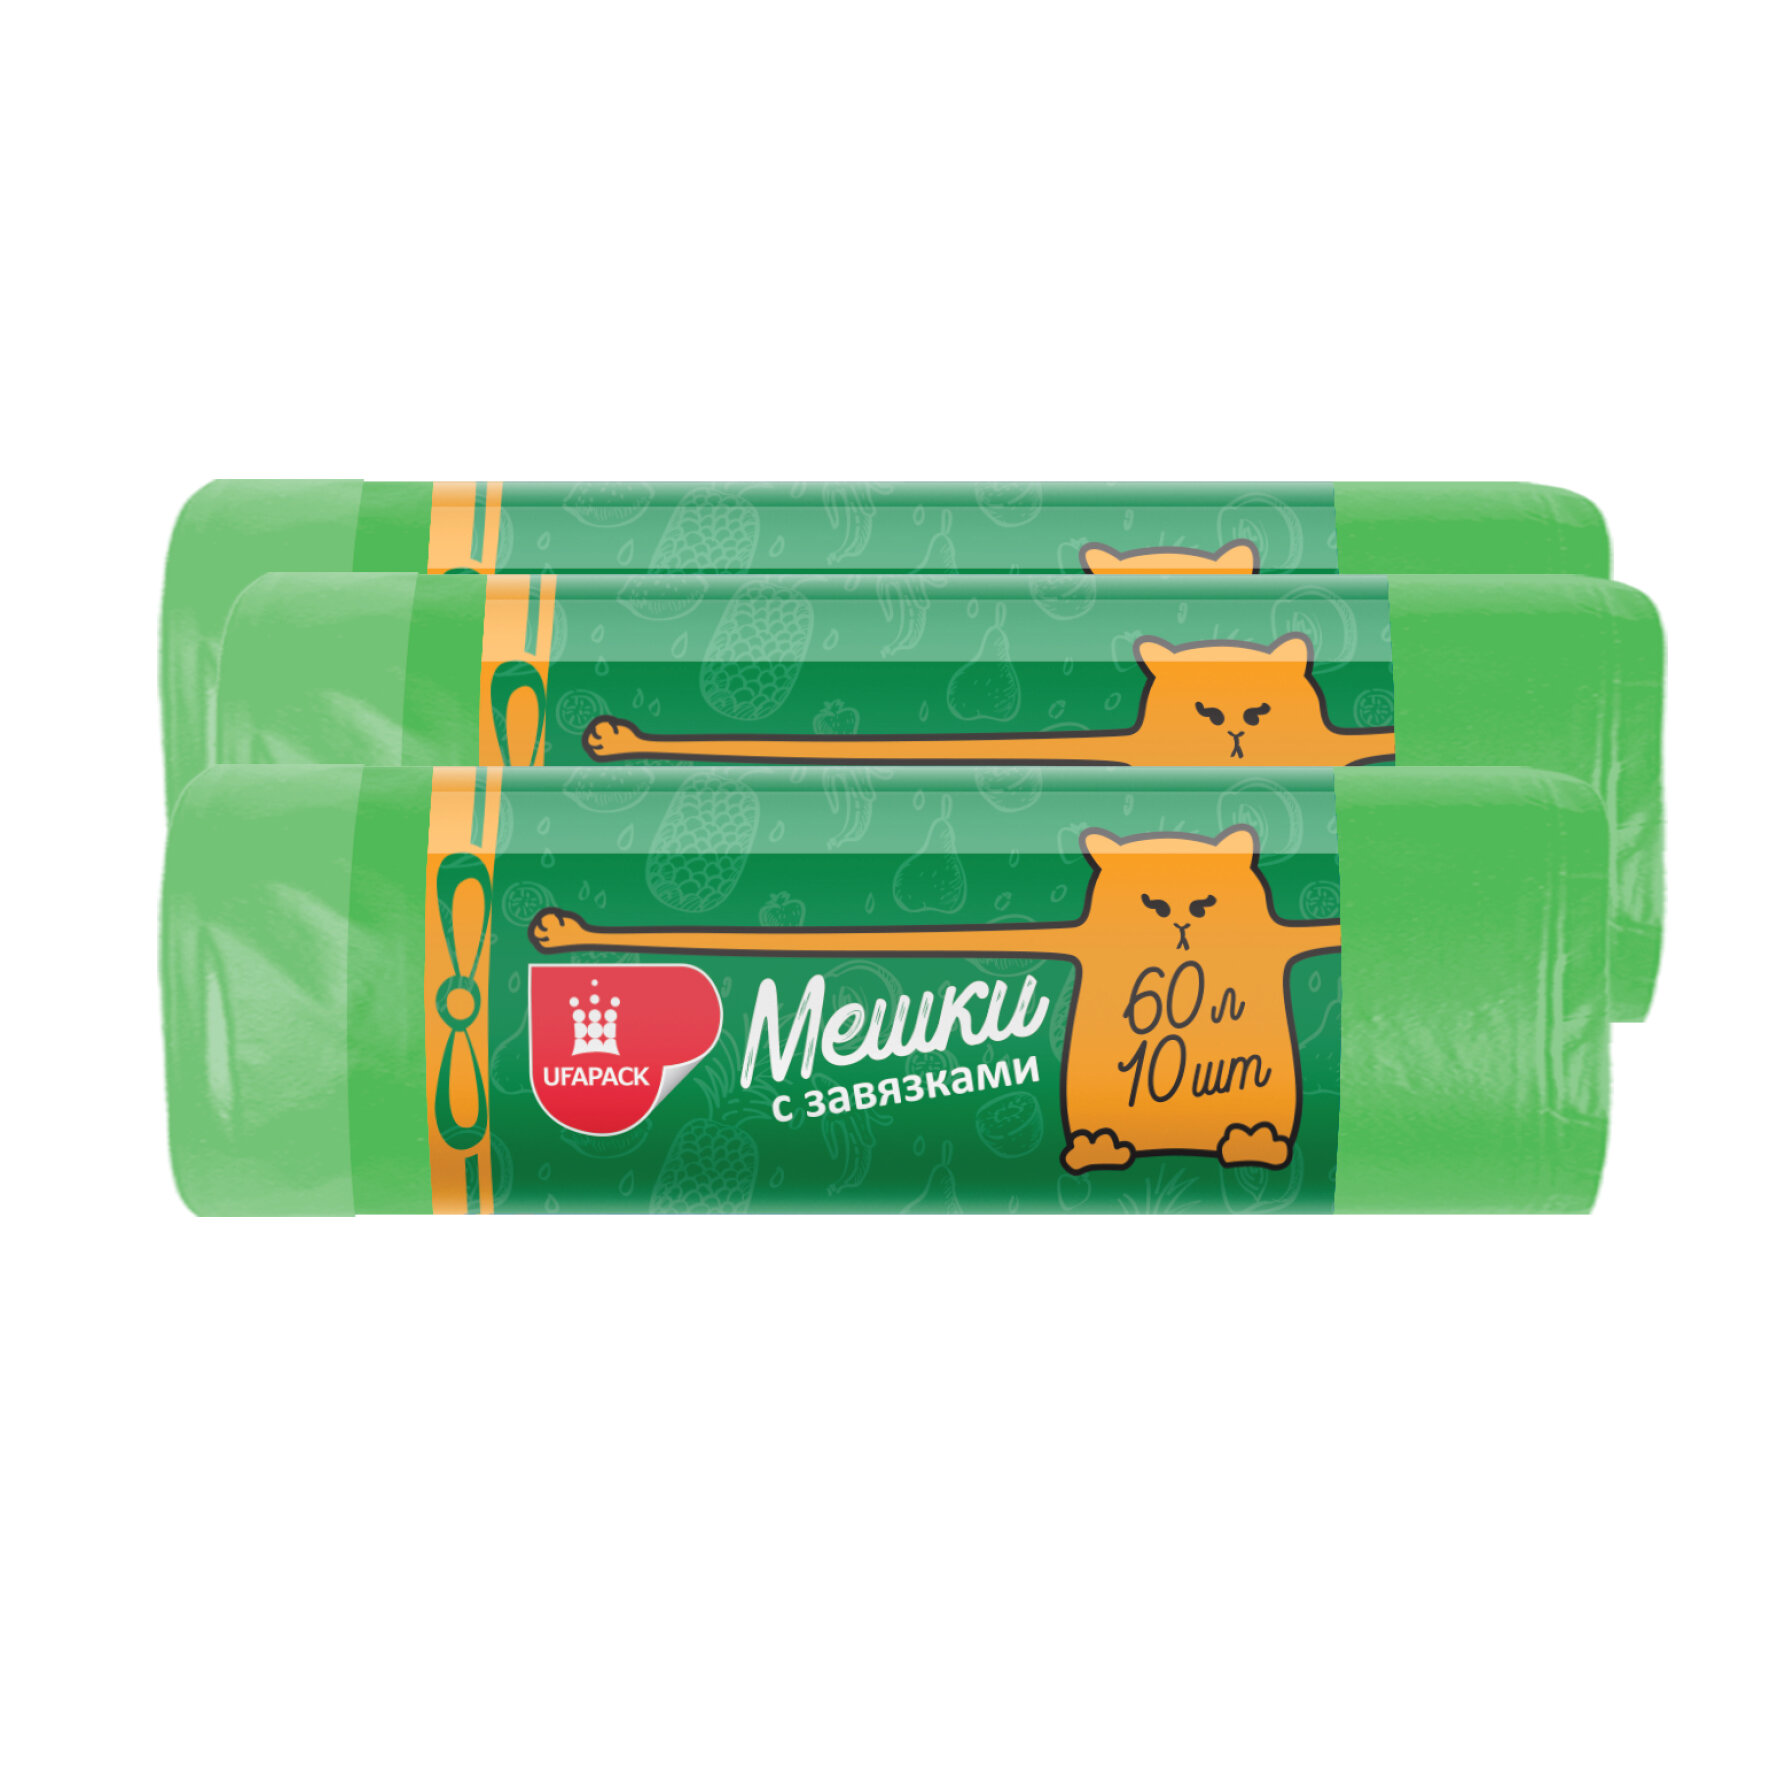 Мешки для мусора UFAPACK прочные с завязками зеленые 60 л, 3 упаковки по 10 шт